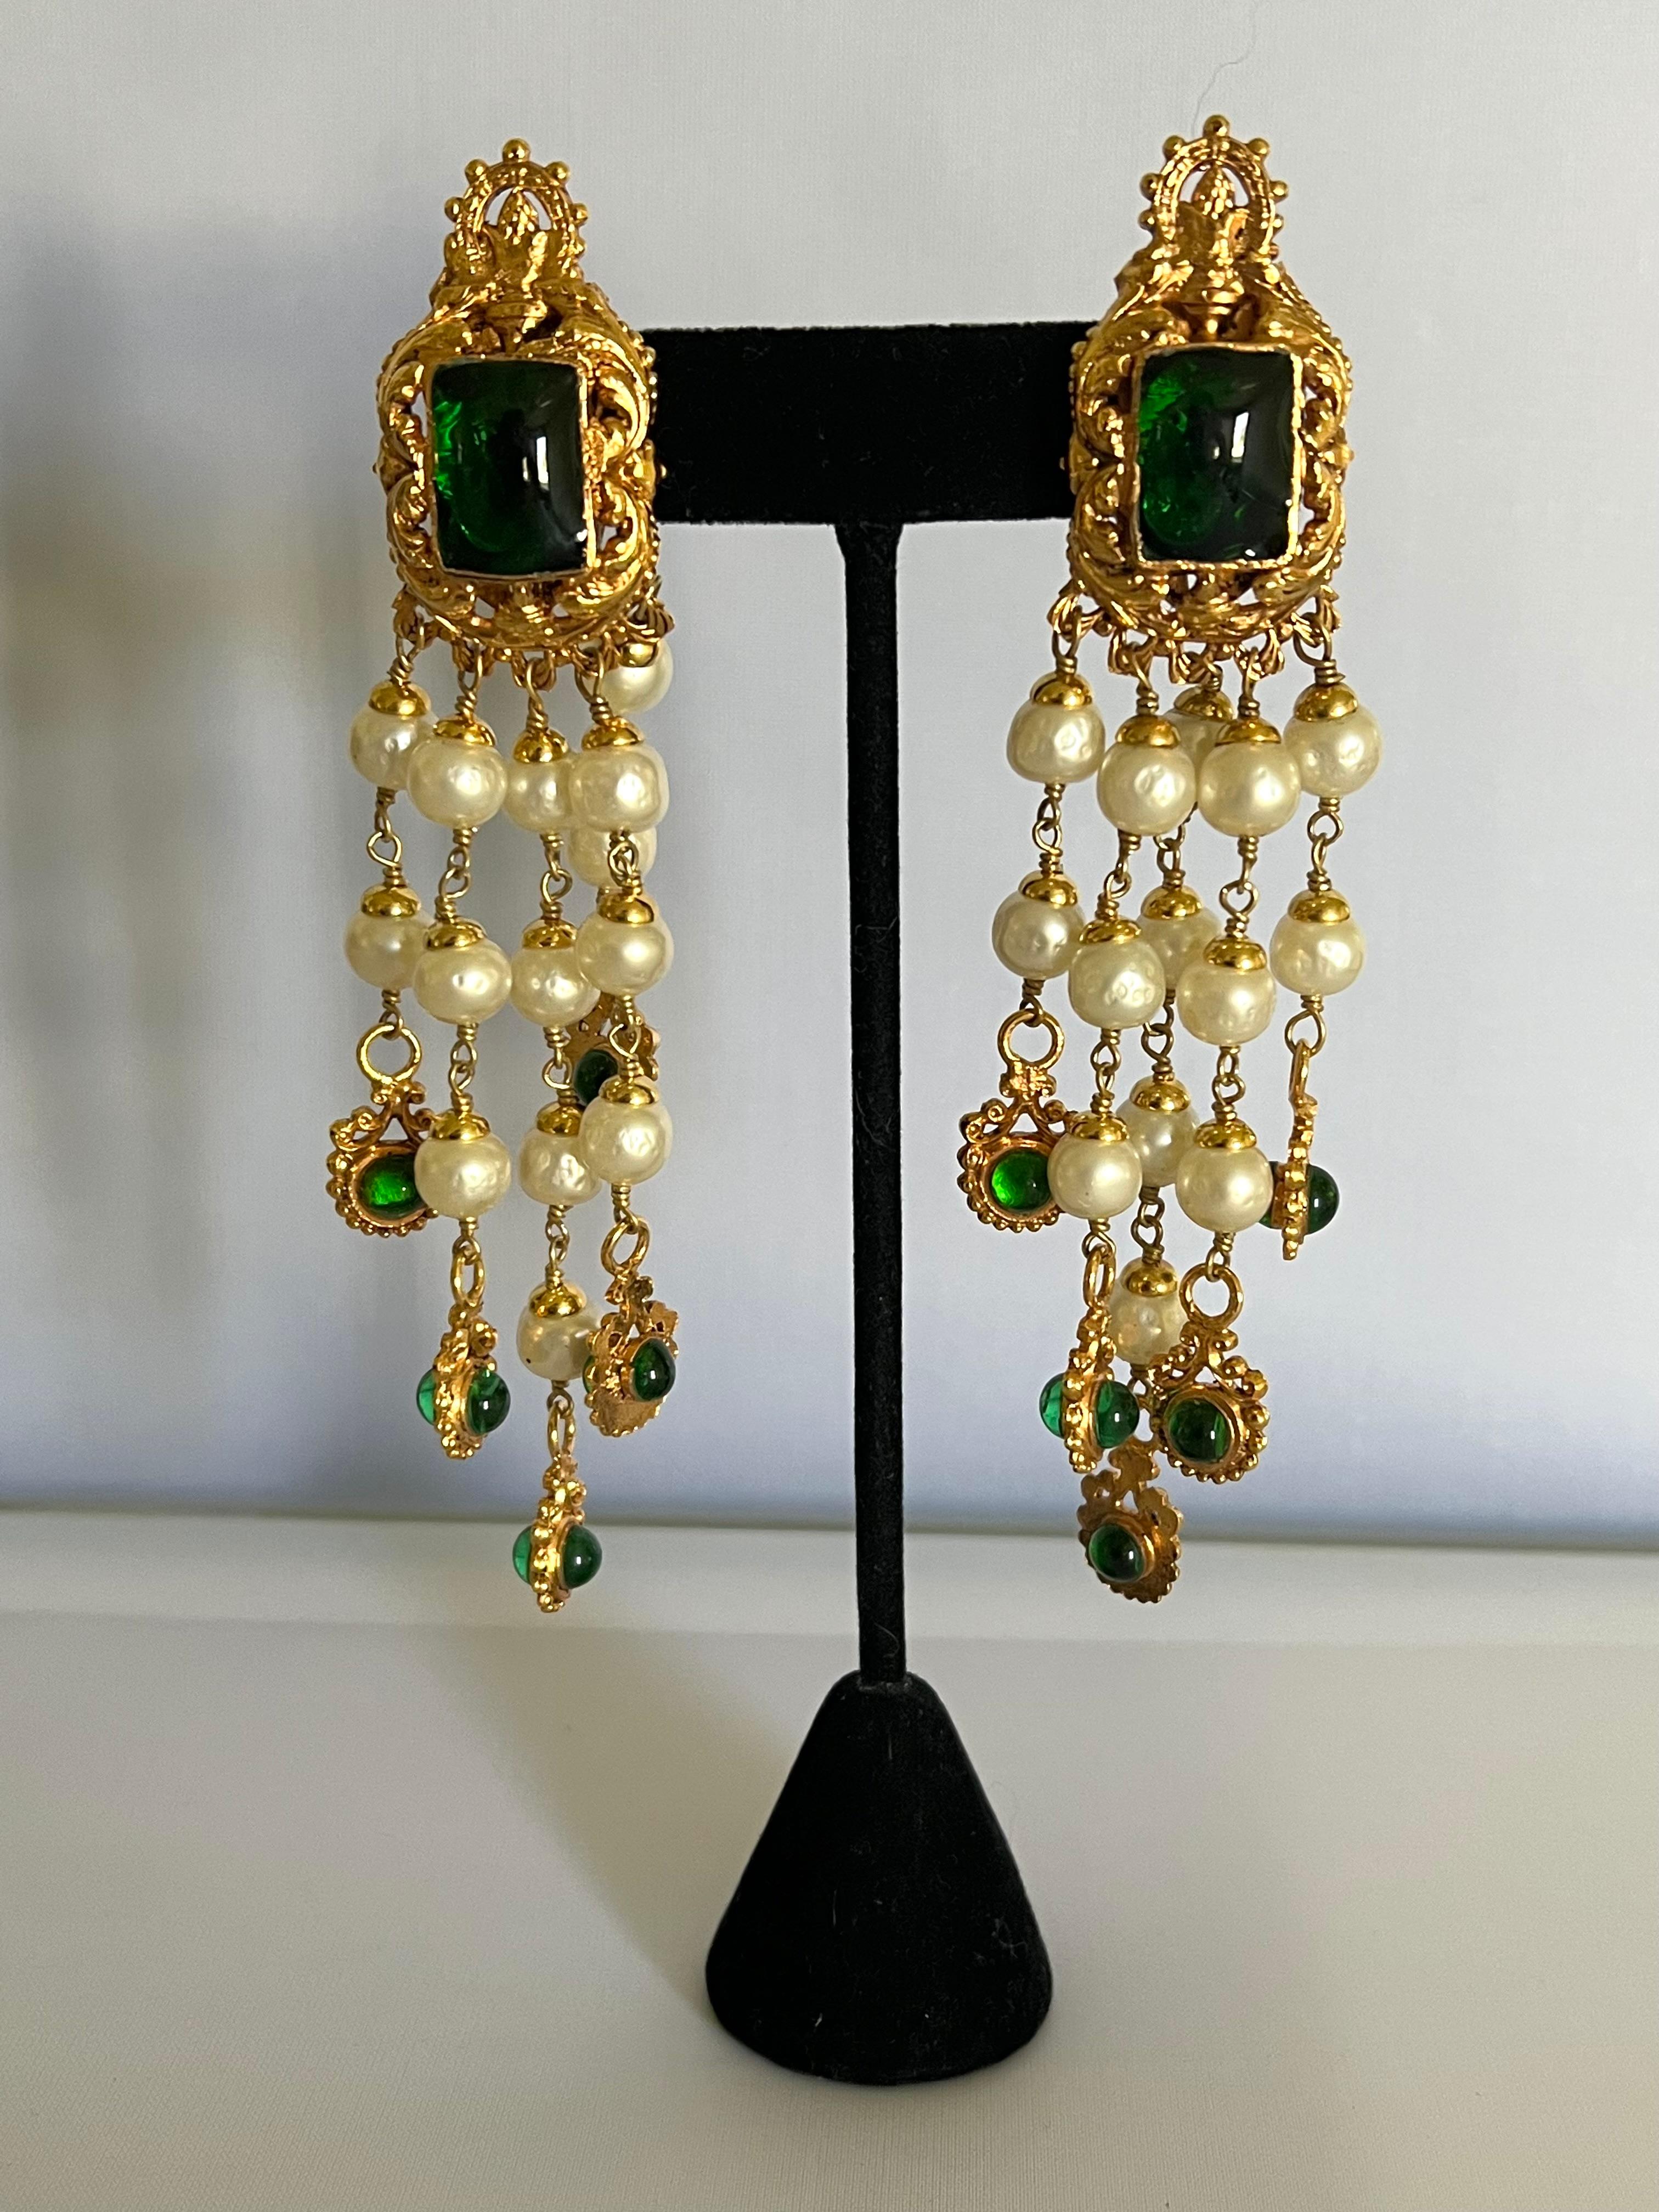 Rares boucles d'oreilles à clips vintage Coco Chanel « doré métallique », de couleur dorée, présentant un design baroque orné de verre vert émeraude «pate de verre » et de perles en faux verre. Les boucles d'oreilles sont signées et figurent sur la